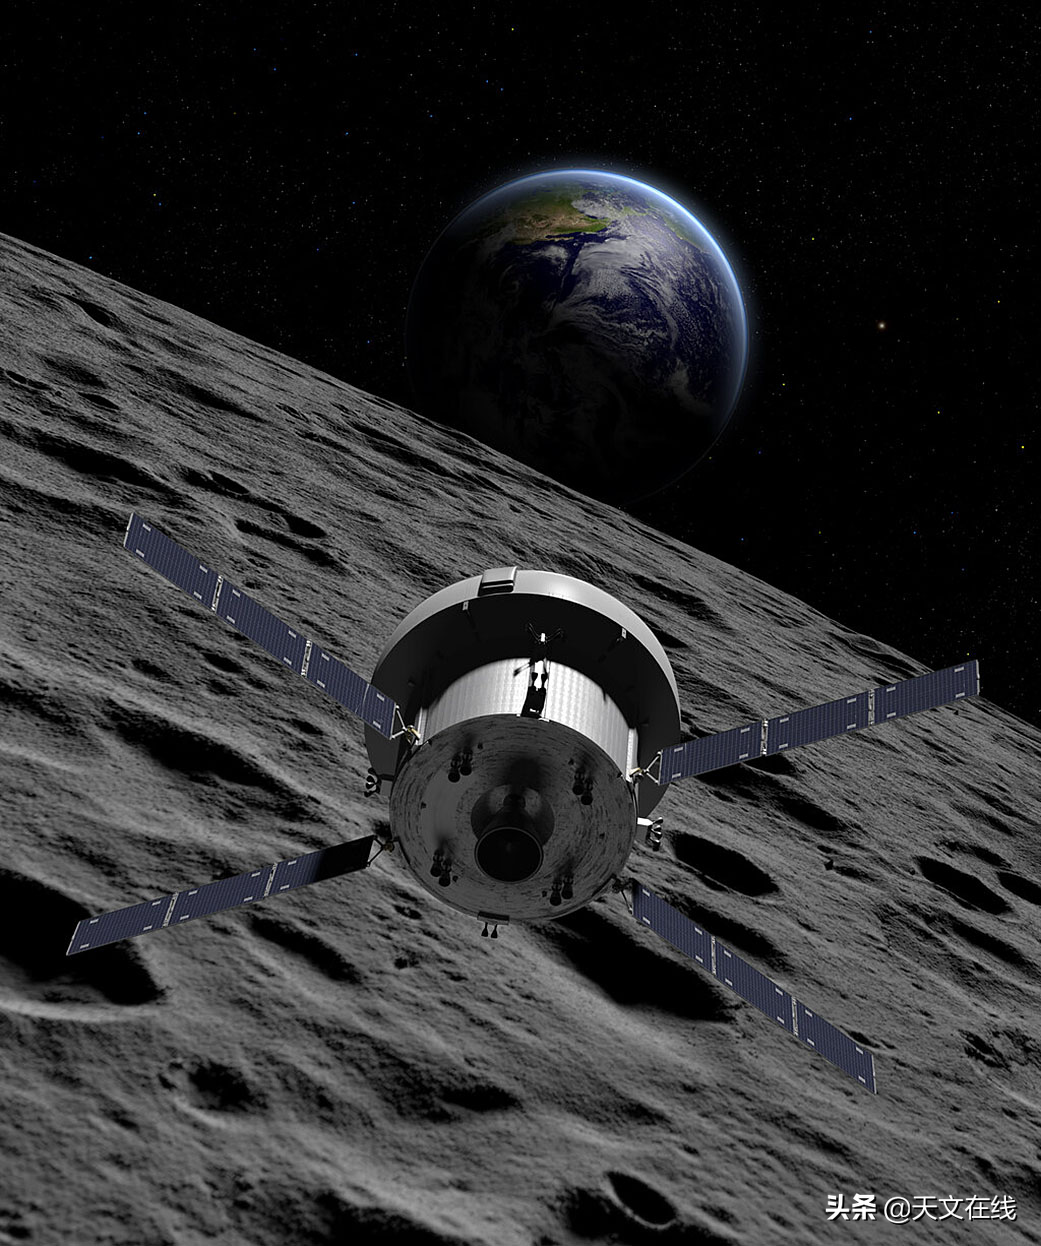 当航天器返回地球时，美国宇航局如何寻找着陆点？